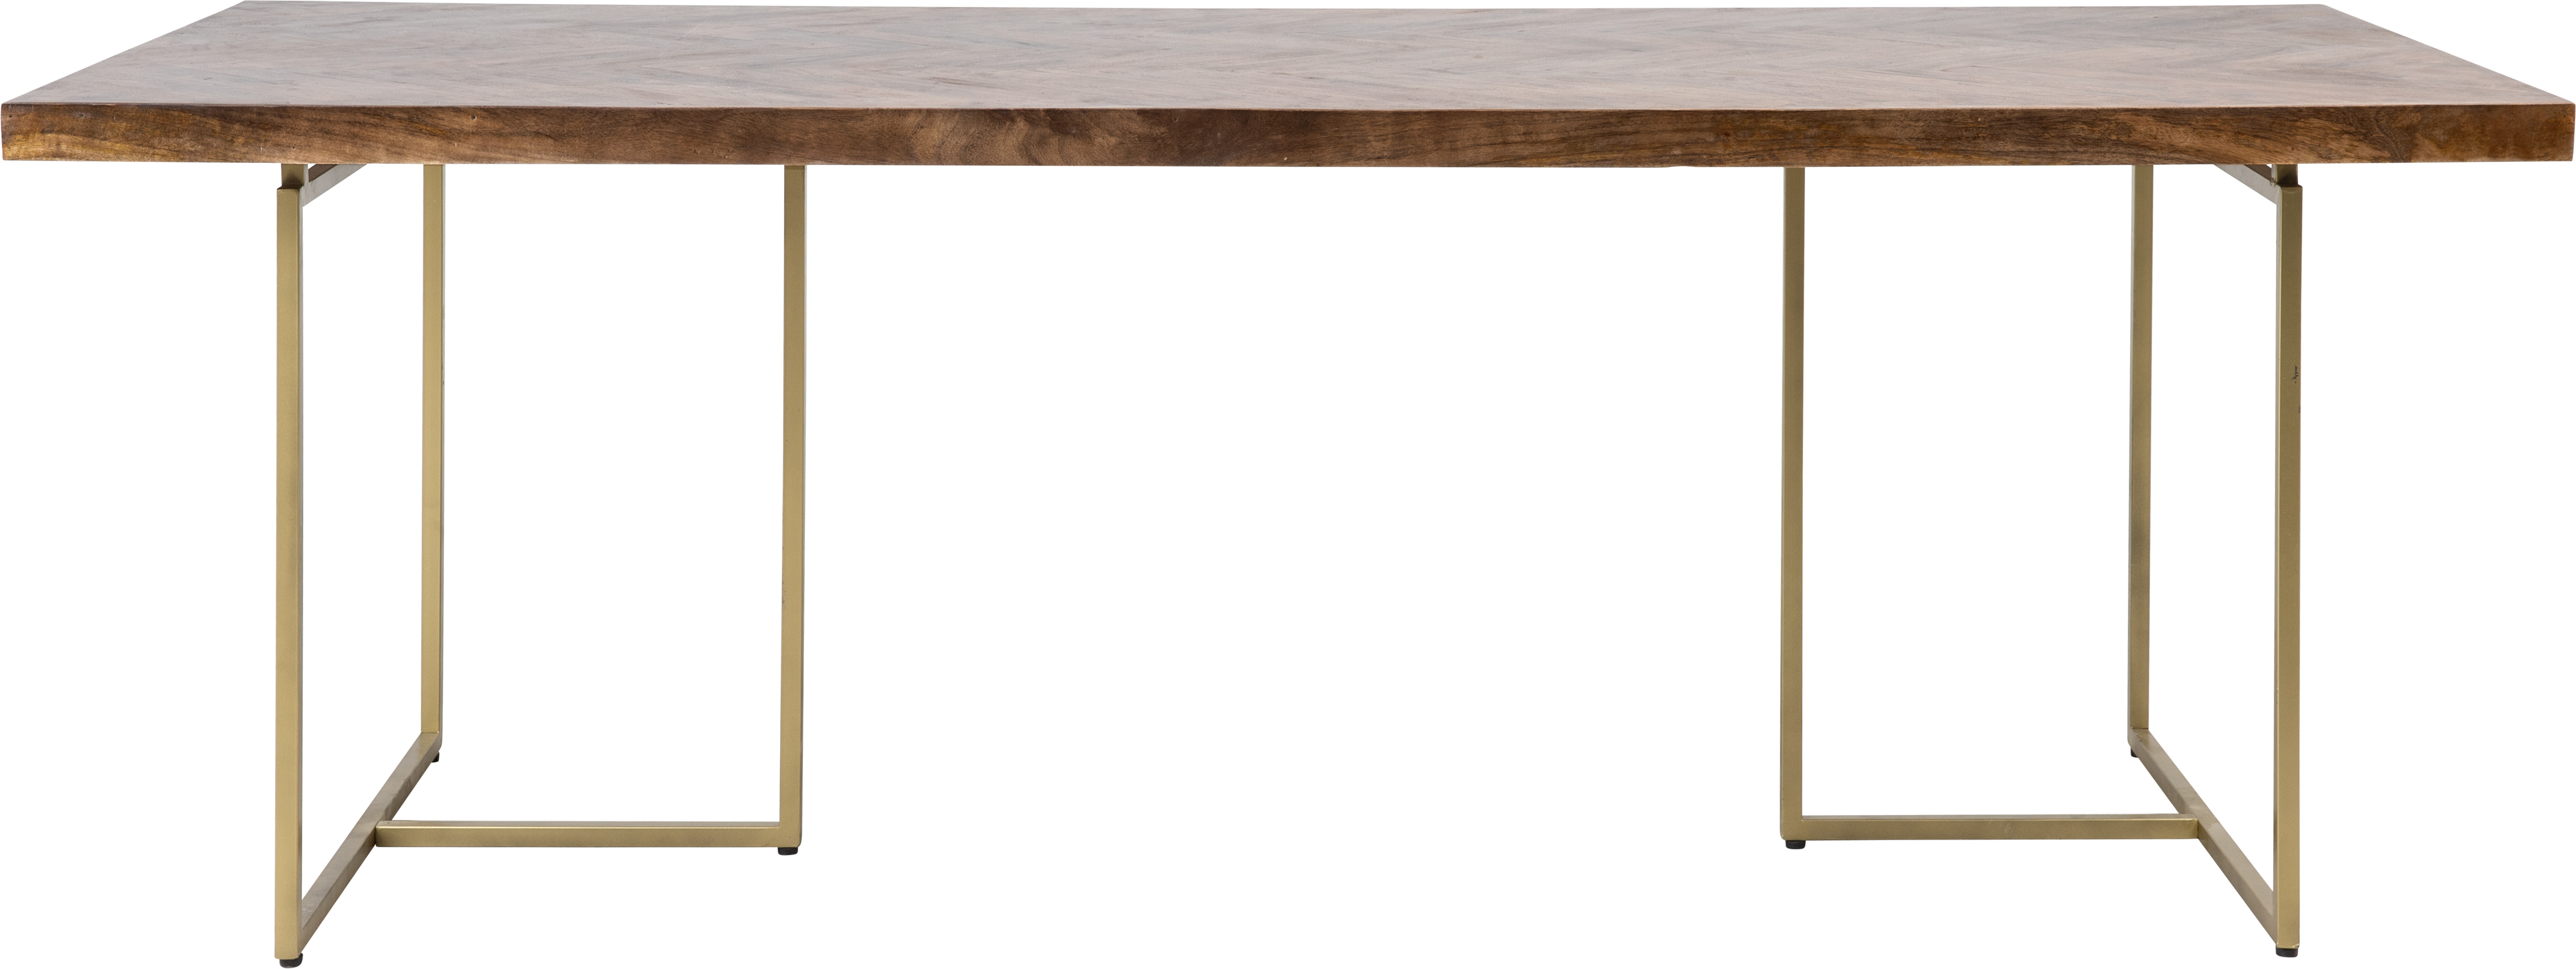 KILROY INDBO North matbord, m. fiskbensmynt, rektangulärt - brunt akaciaträ